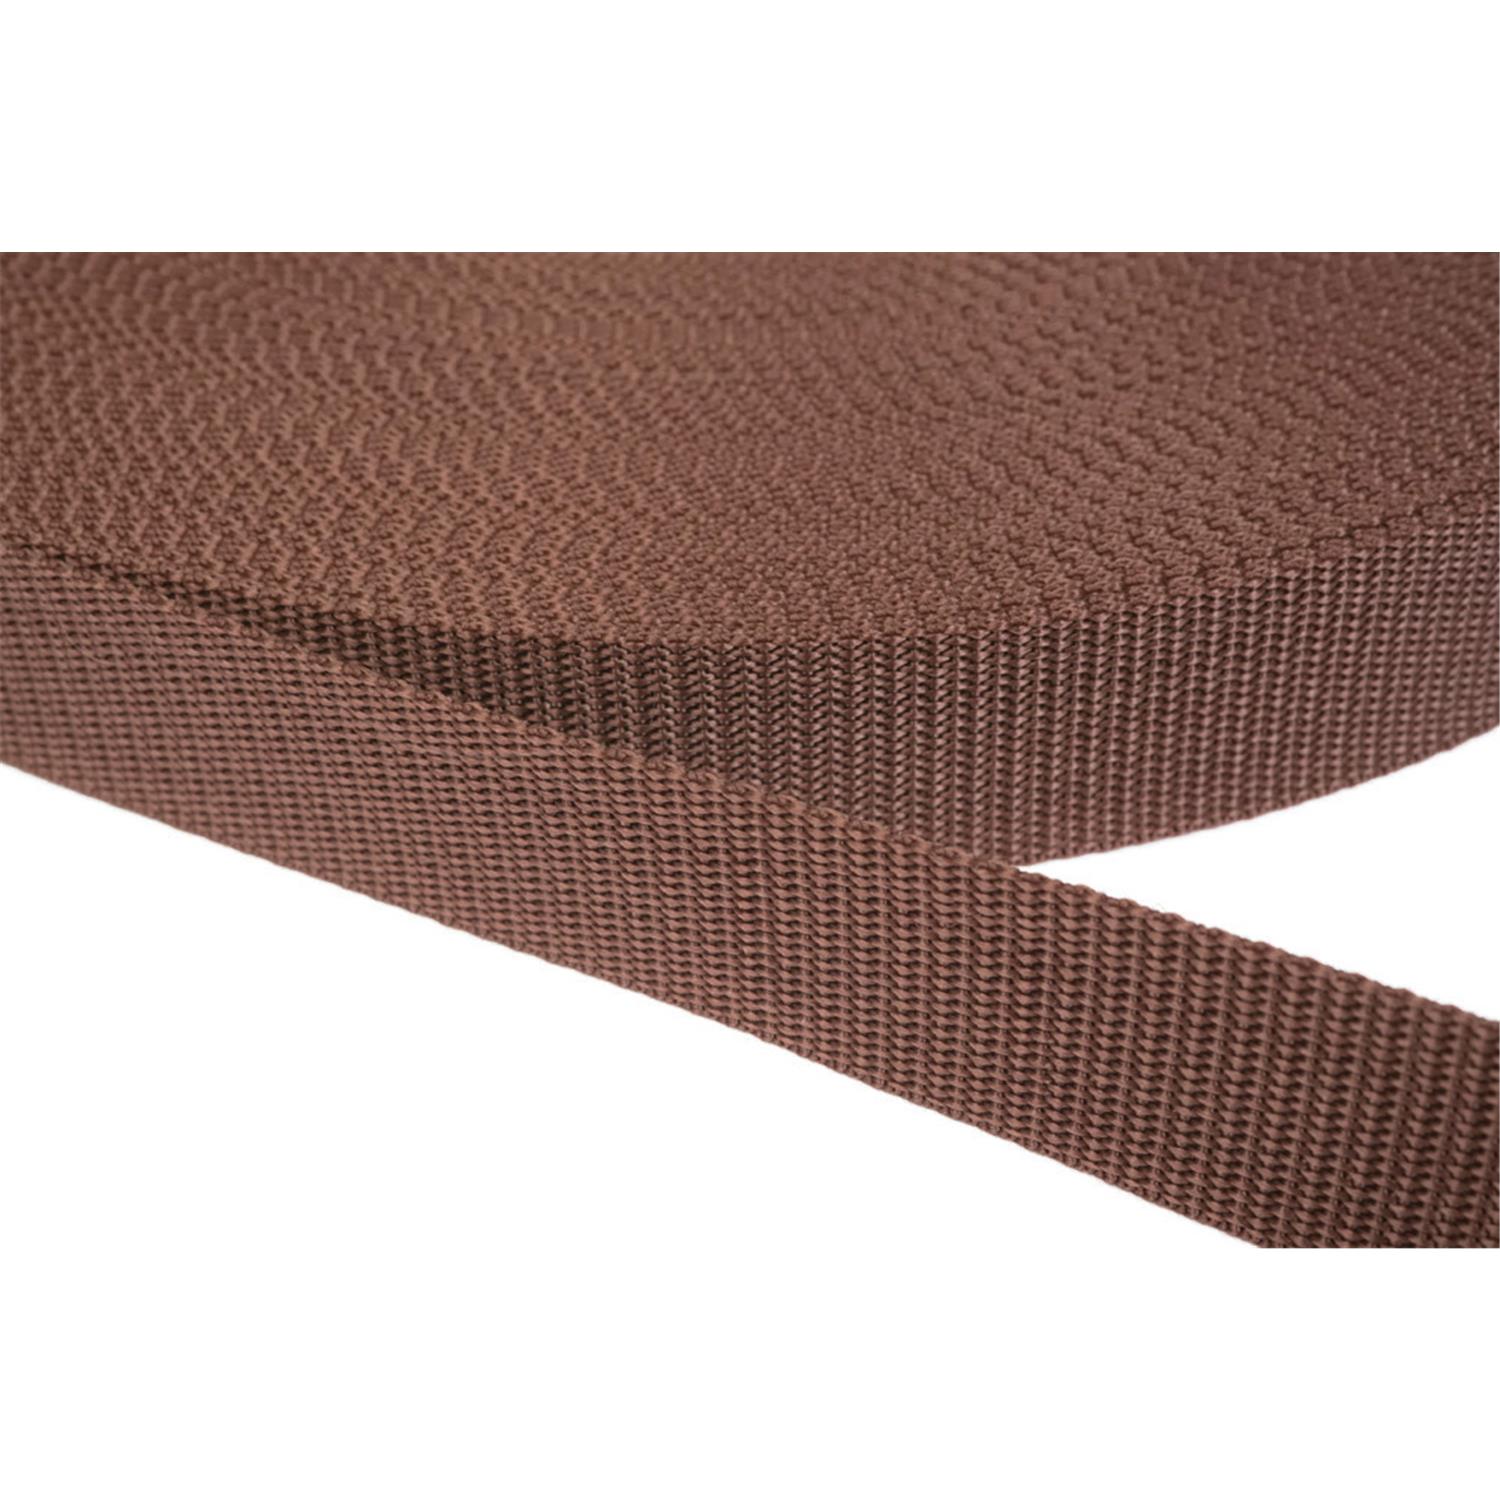 Gurtband 25mm breit aus Polypropylen in 41 Farben 07 - braun 50 Meter